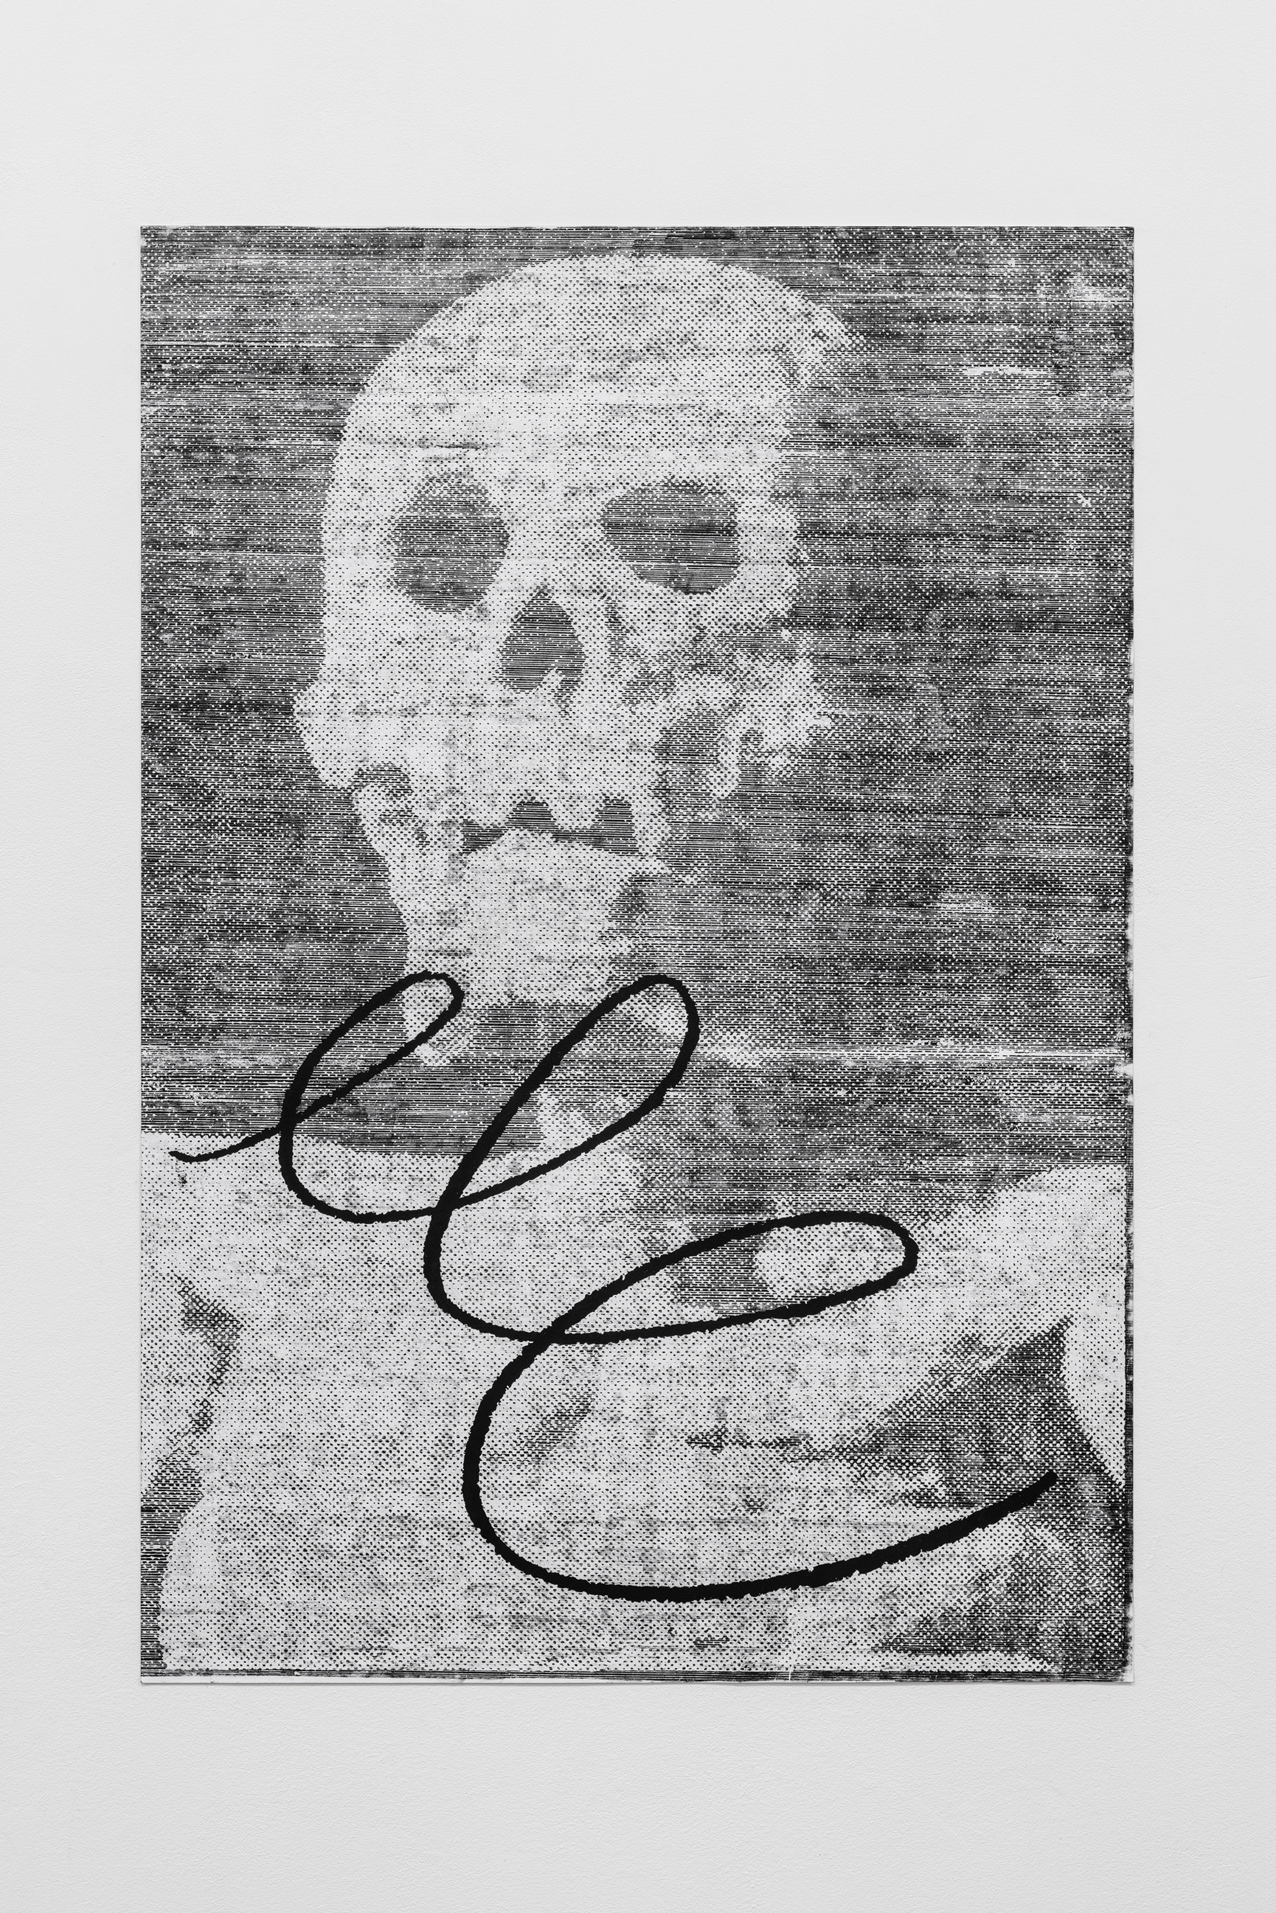 Maxime Le Bon, Death #2, 2020, oil and graphit on paper, 75 x 110 cm